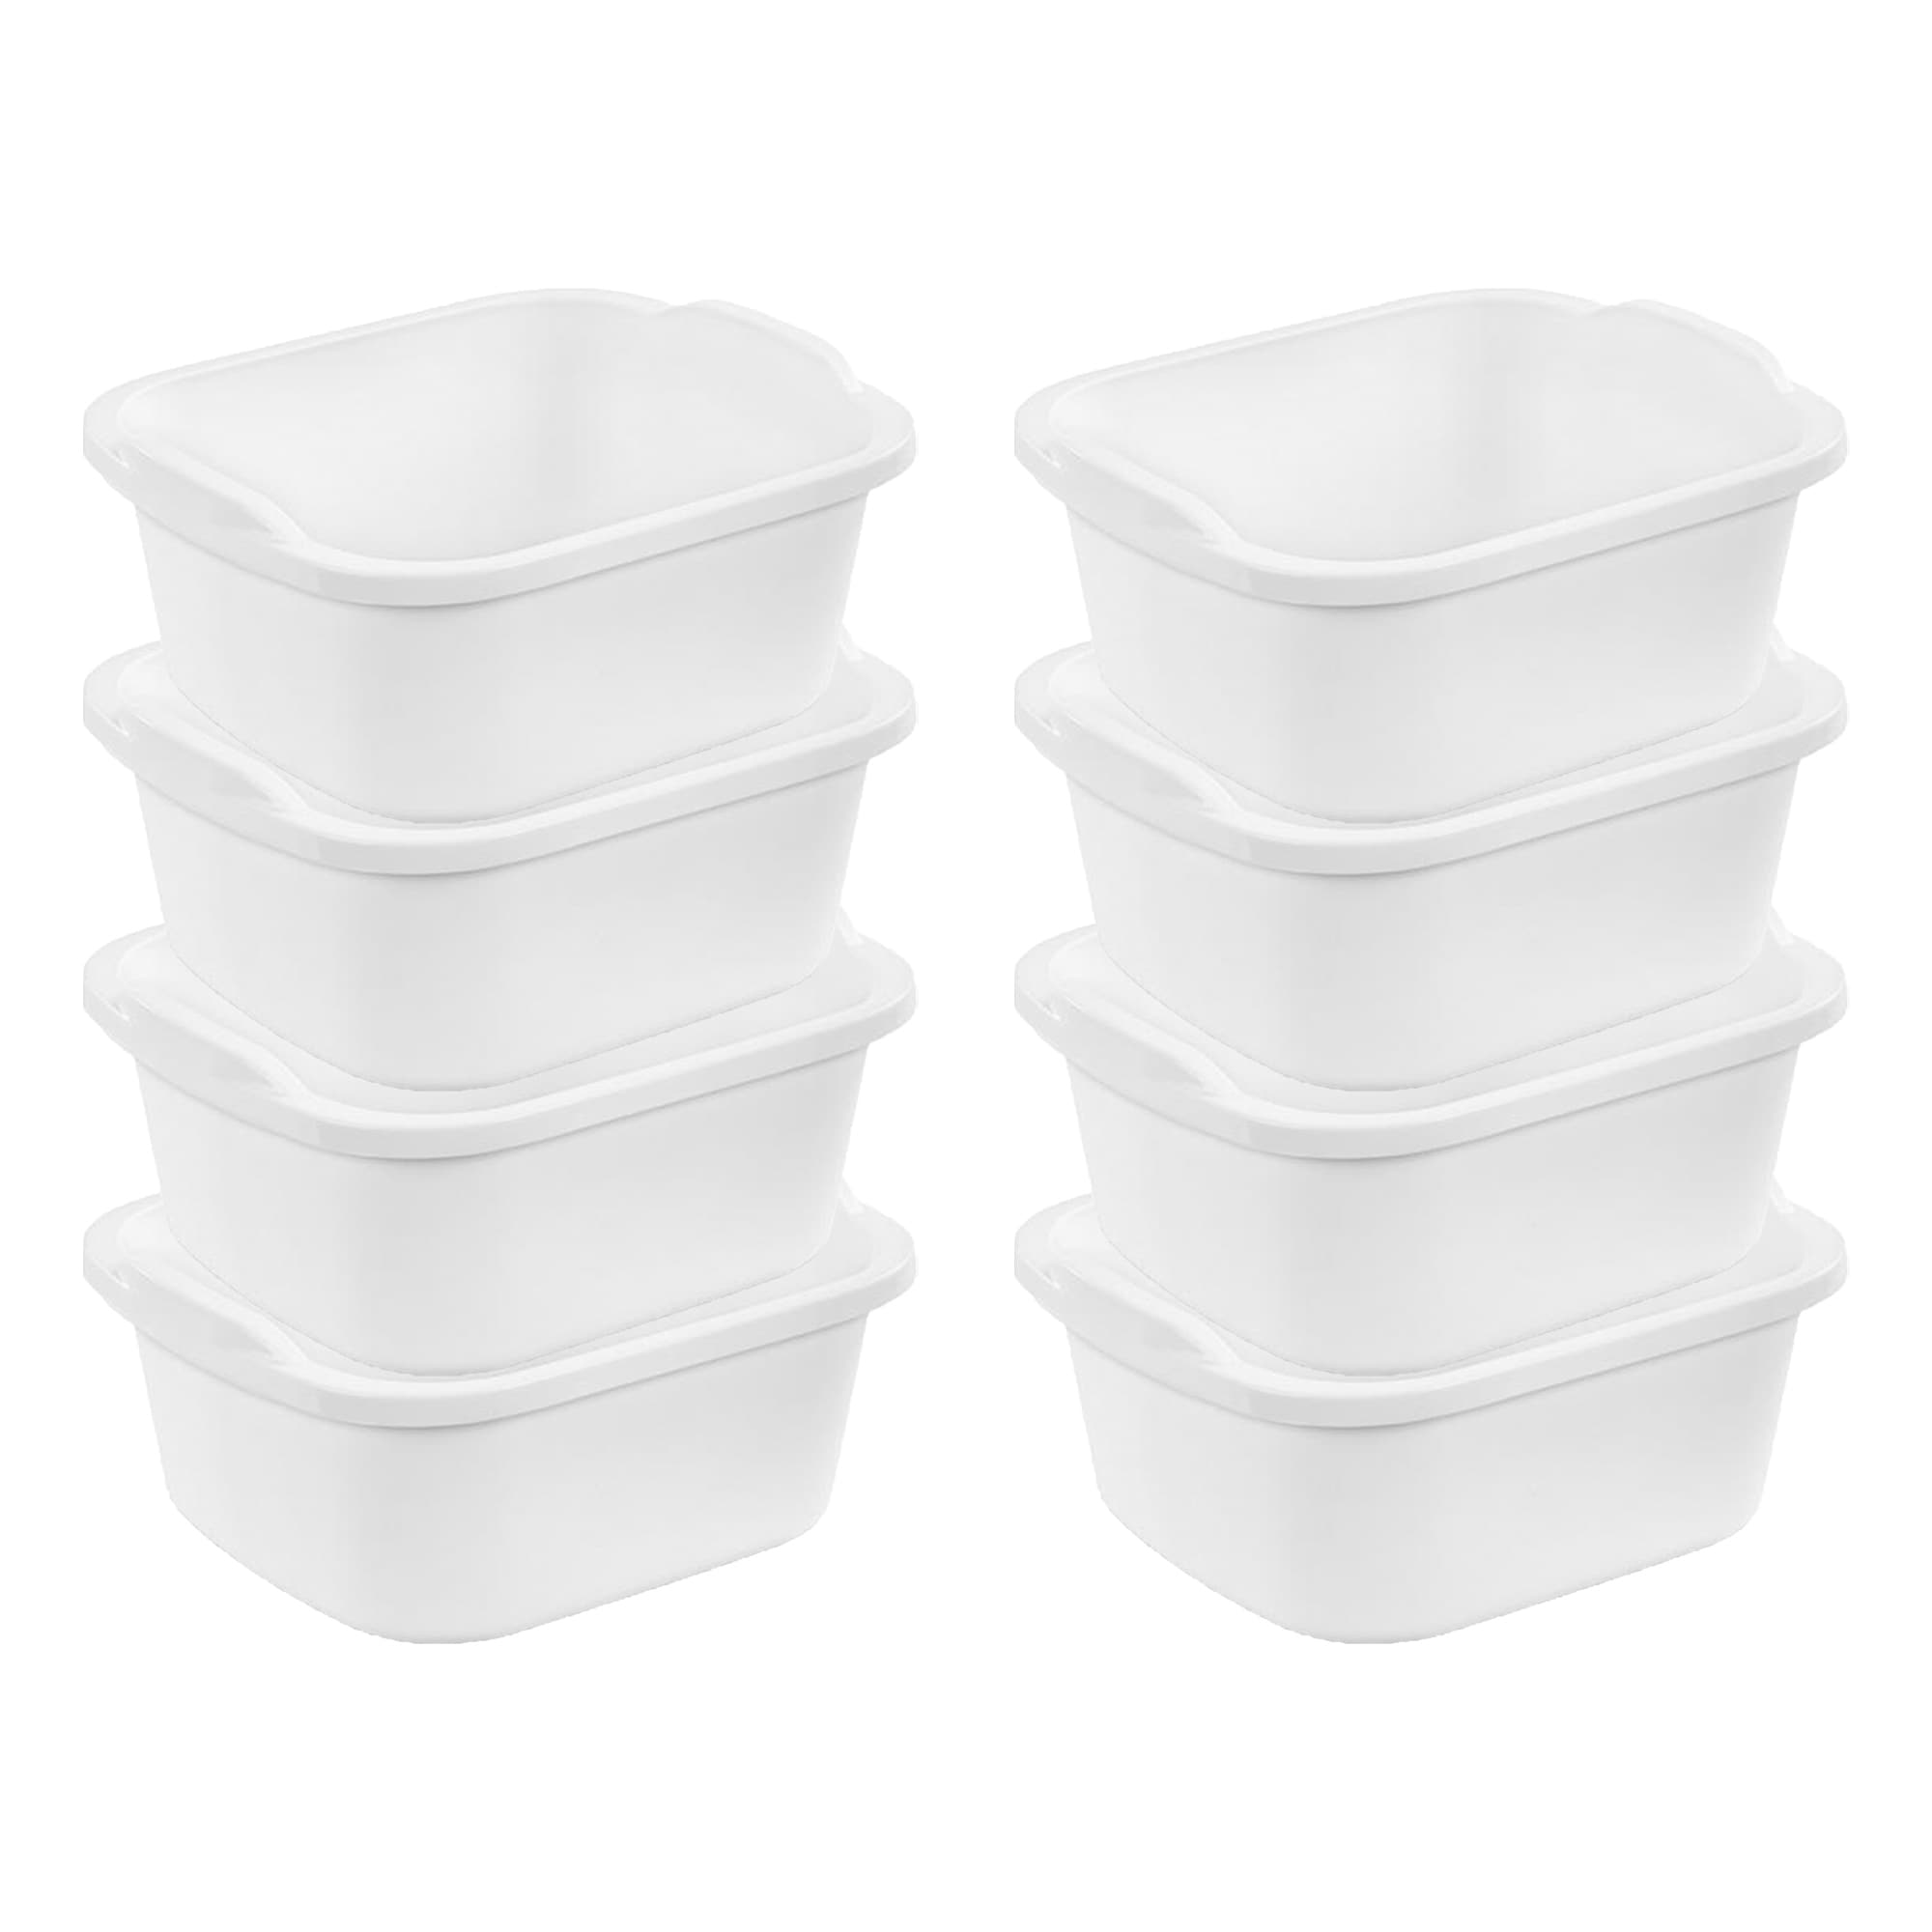 Large White Dishpans, 18 qt.